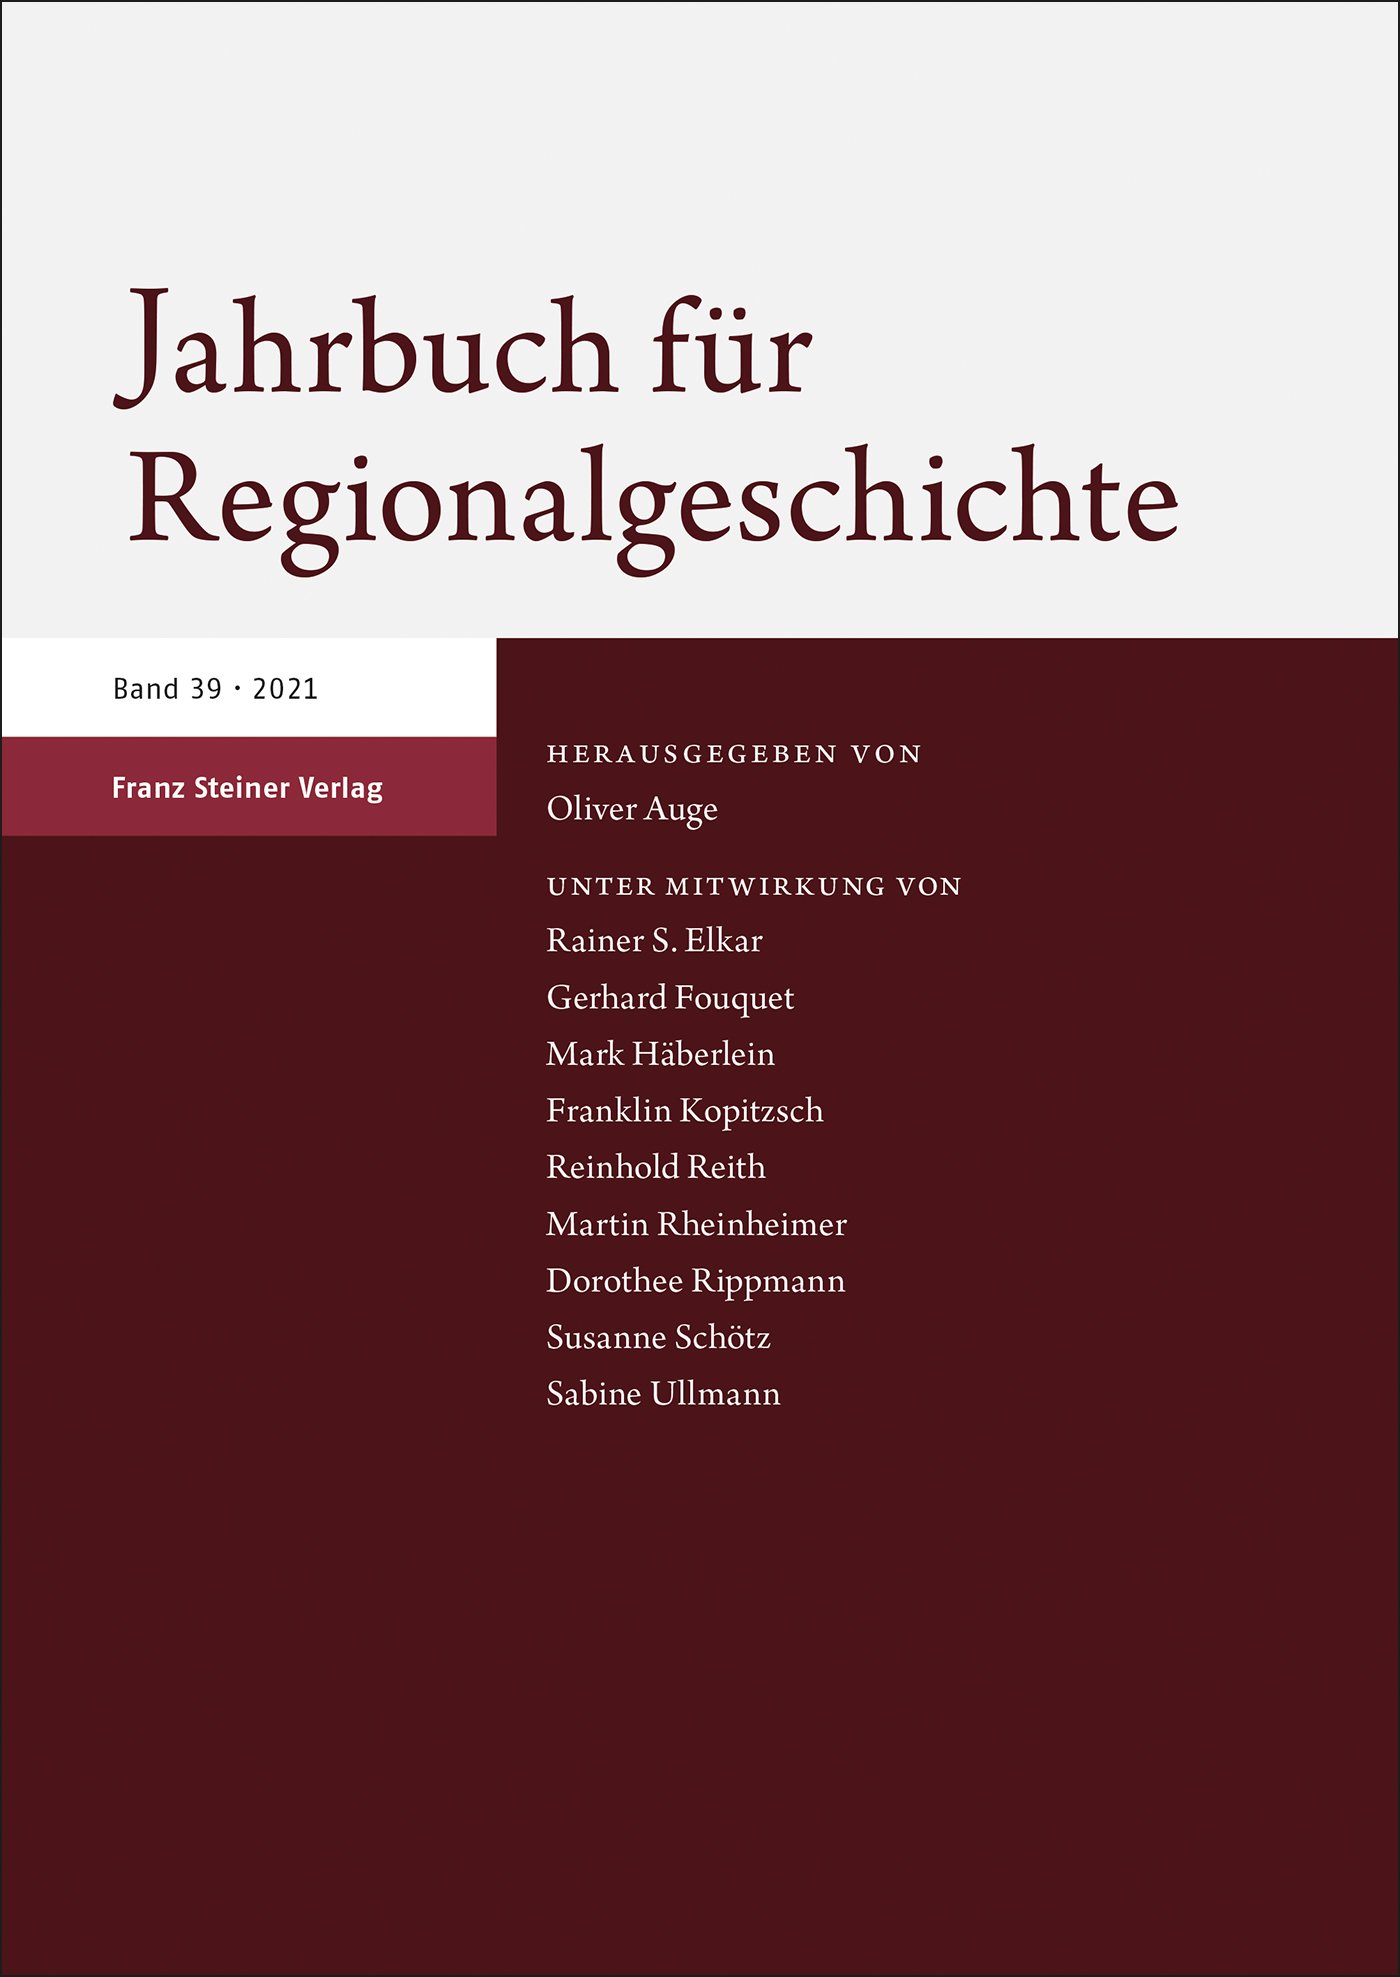 Jahrbuch für Regionalgeschichte 39 (2021)